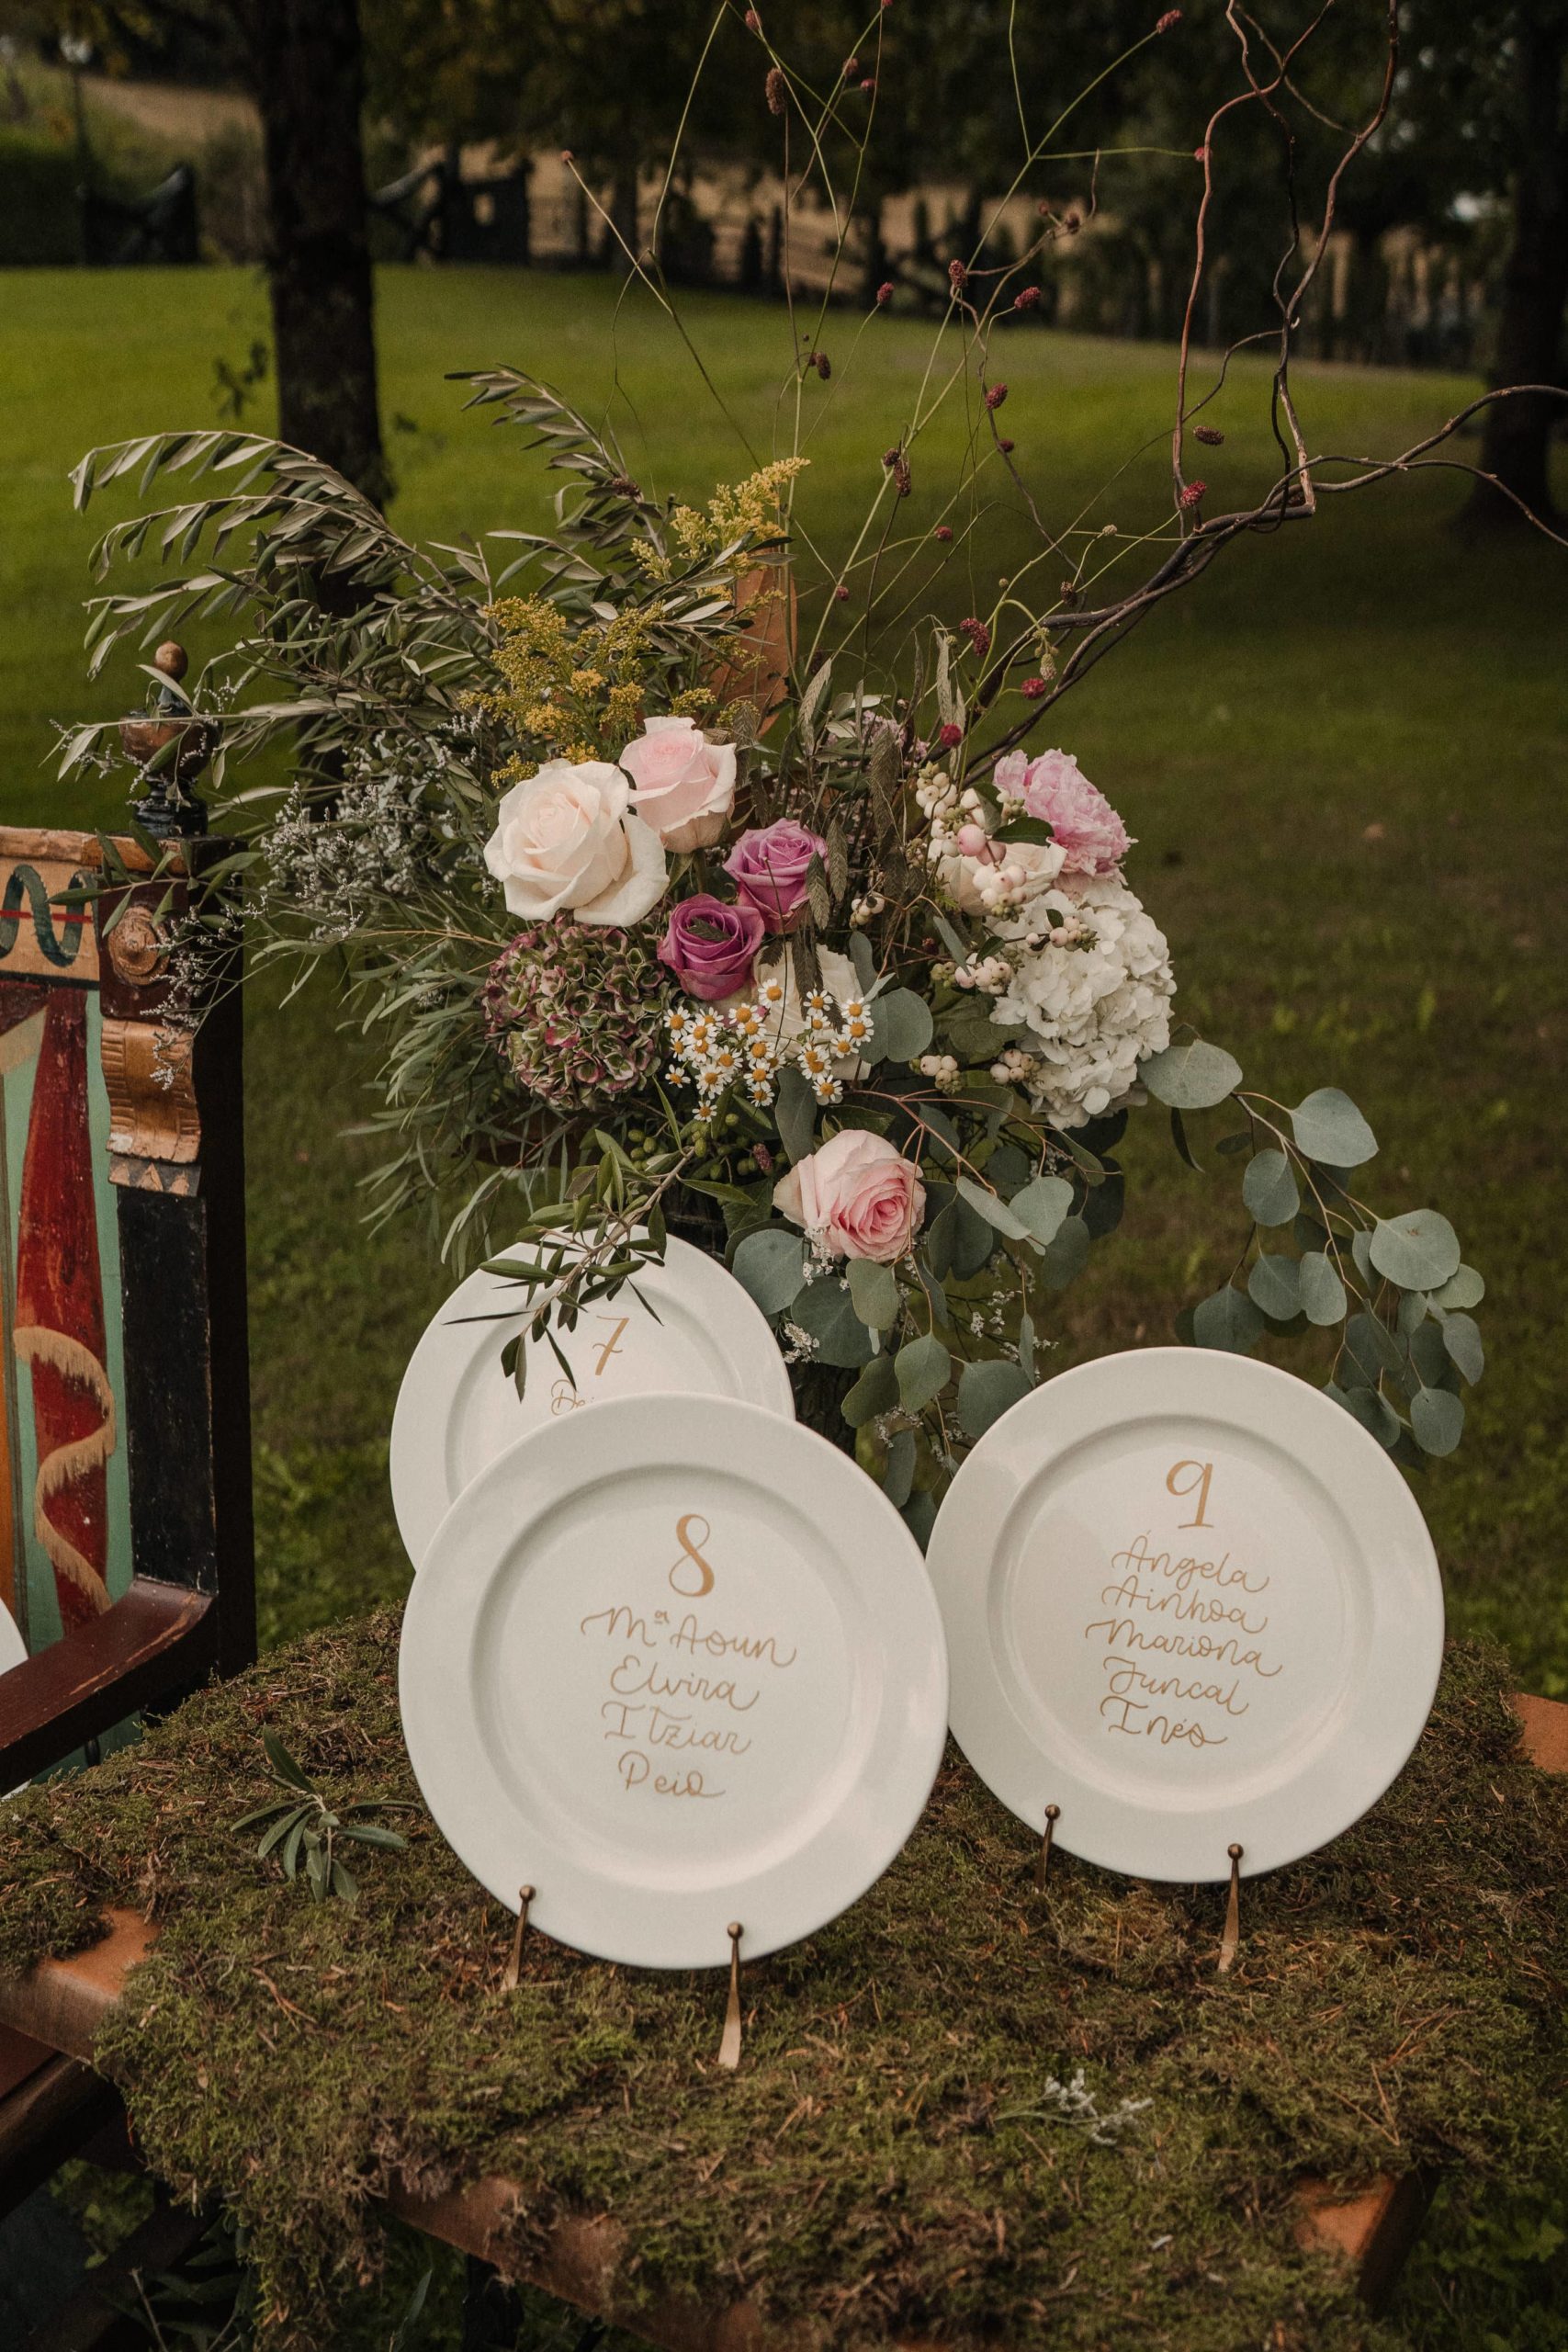 boda covid, vista parcial del seating platos caligrafiados